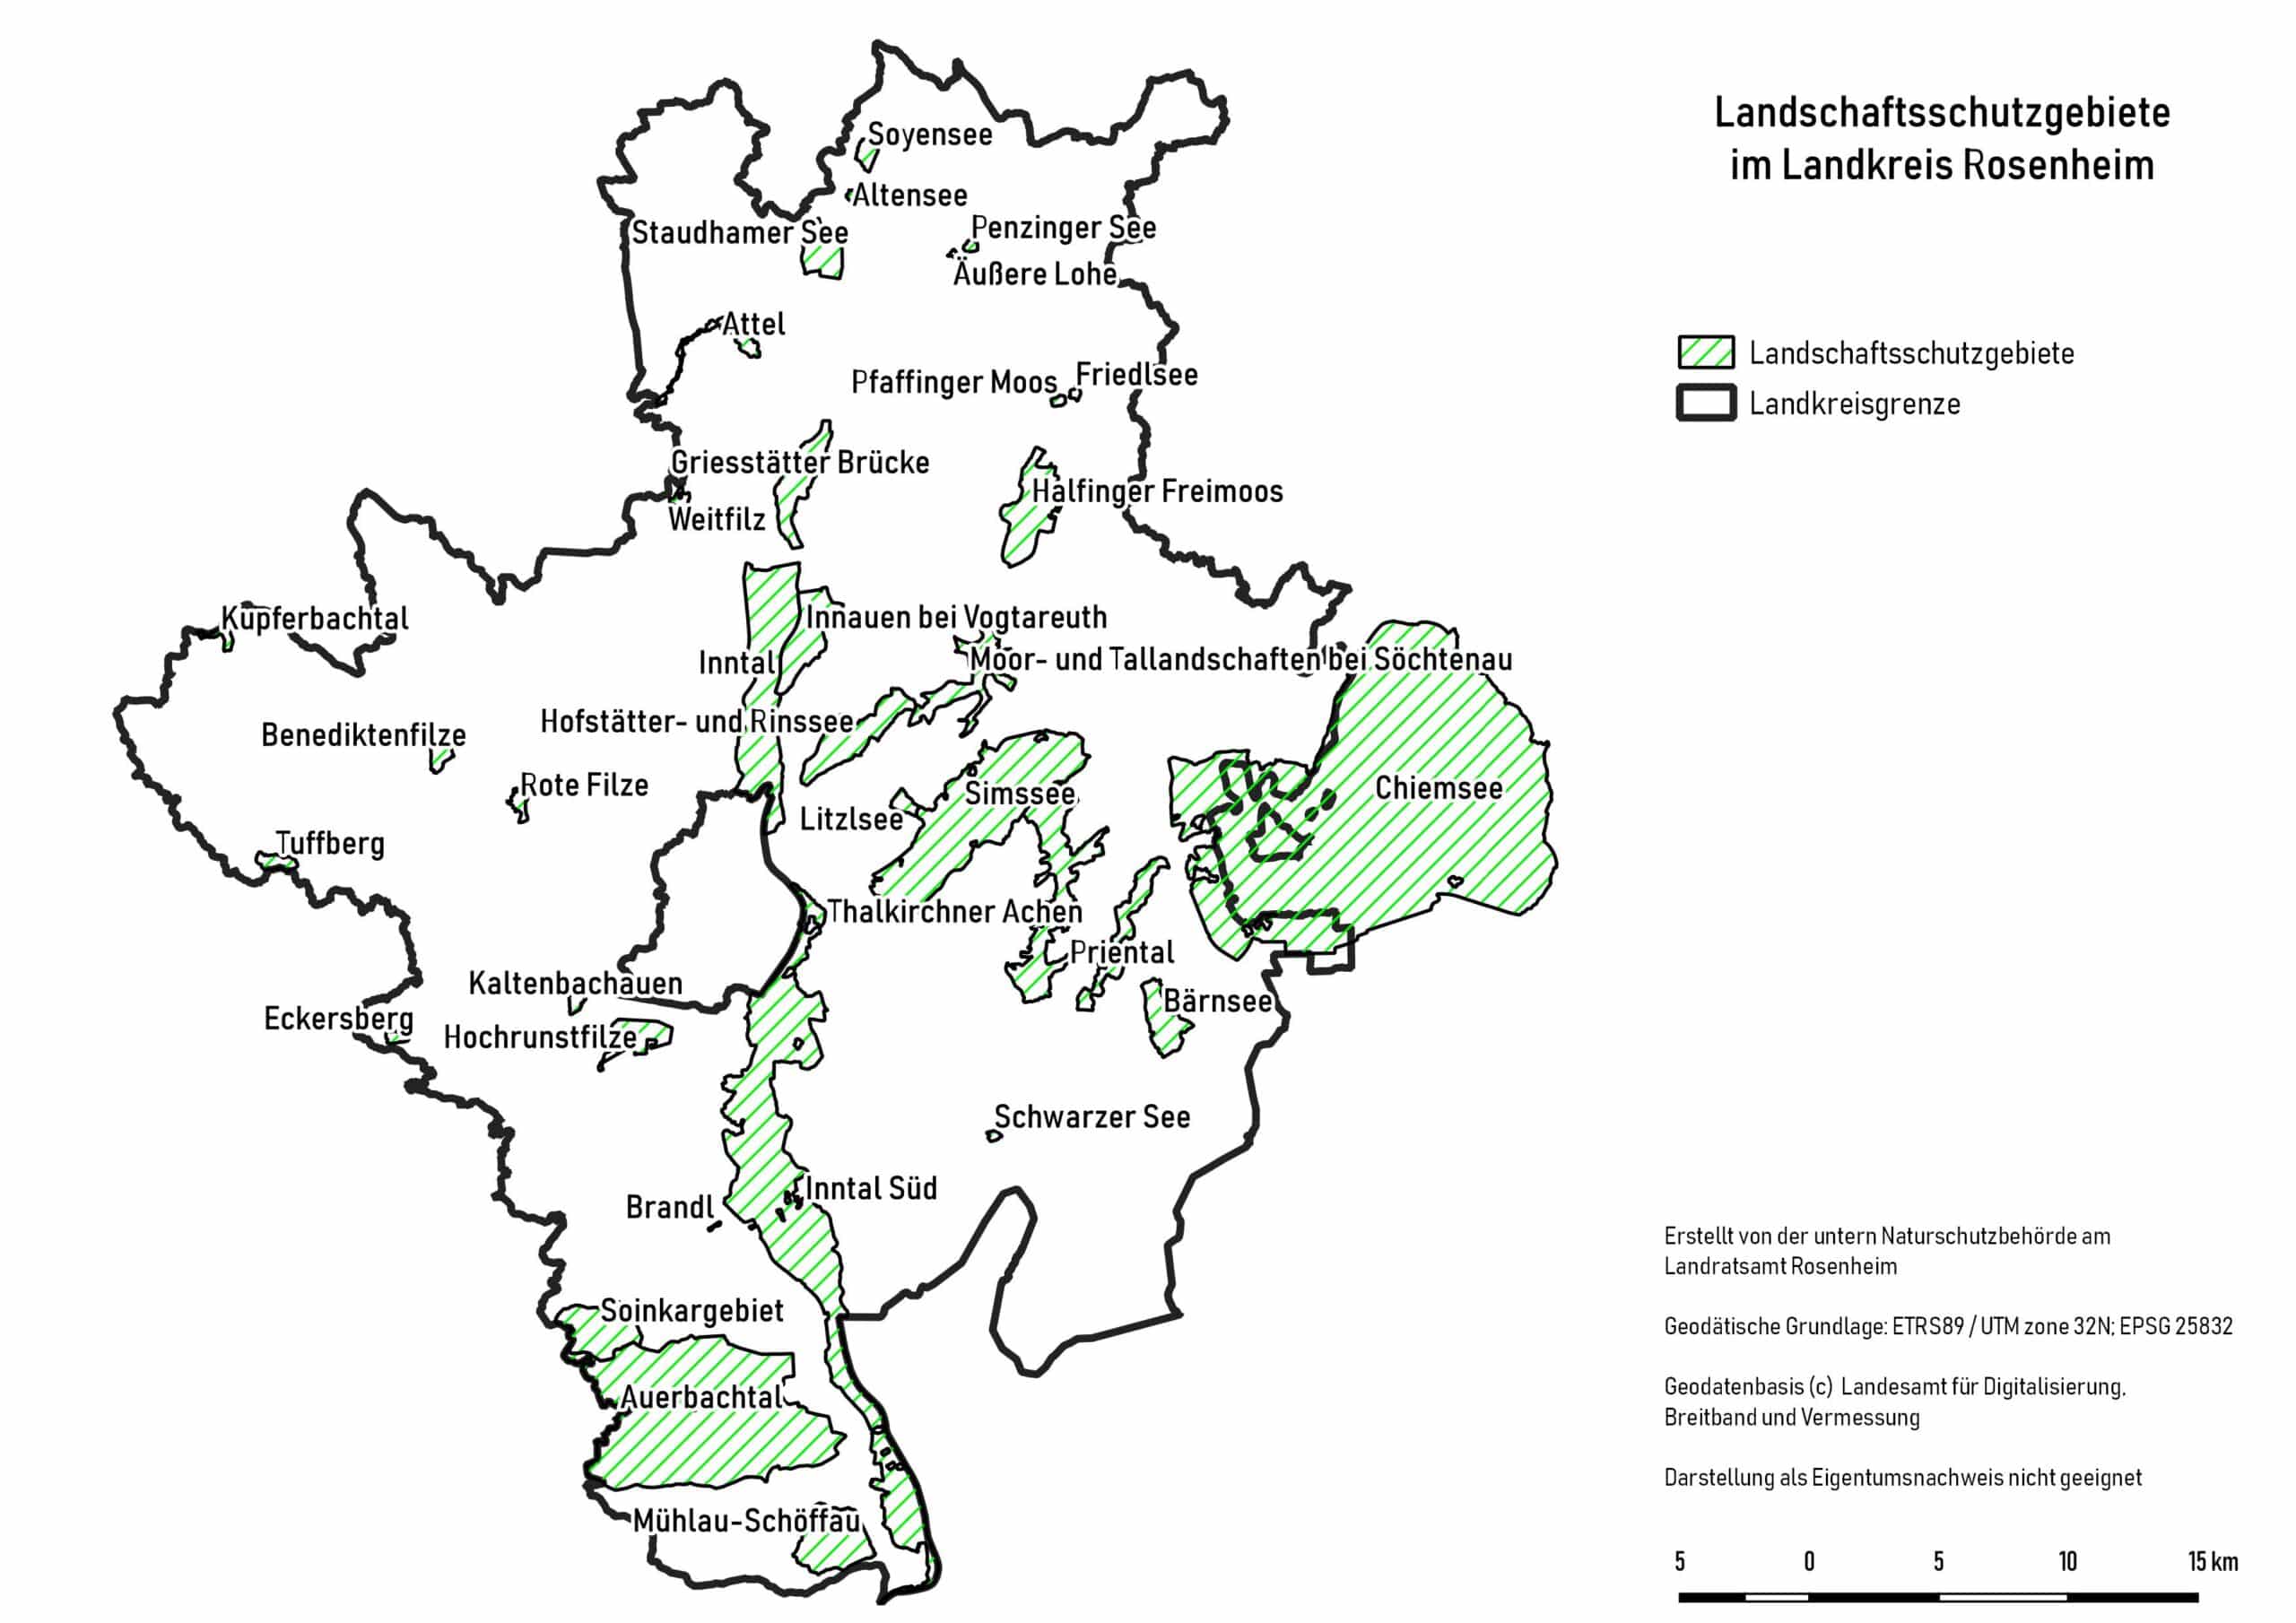 Übersicht der Landschaftsschutzgebiete im Landkreis Rosenheim, Stand 30.06.2022